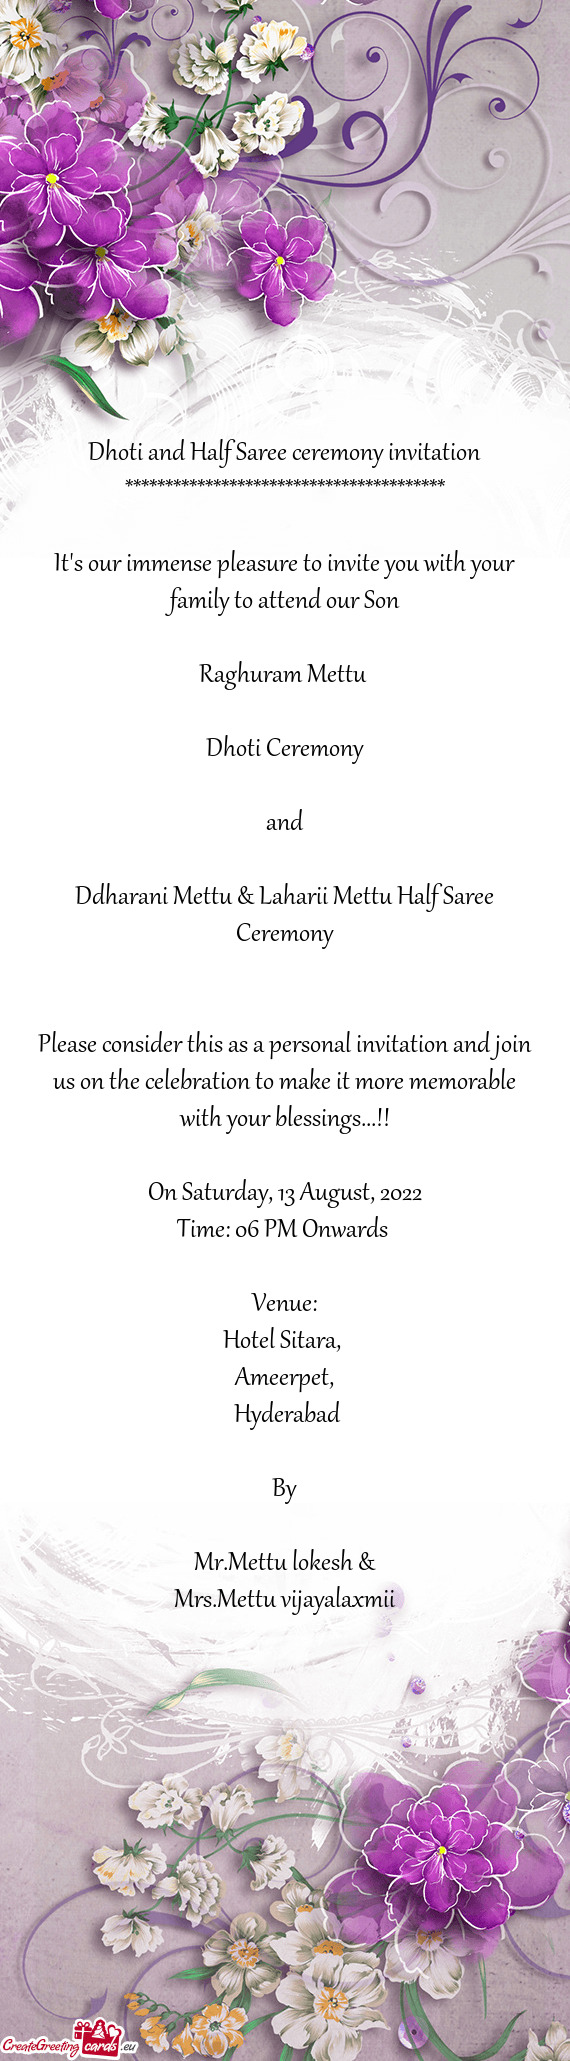 Ddharani Mettu & Laharii Mettu Half Saree Ceremony